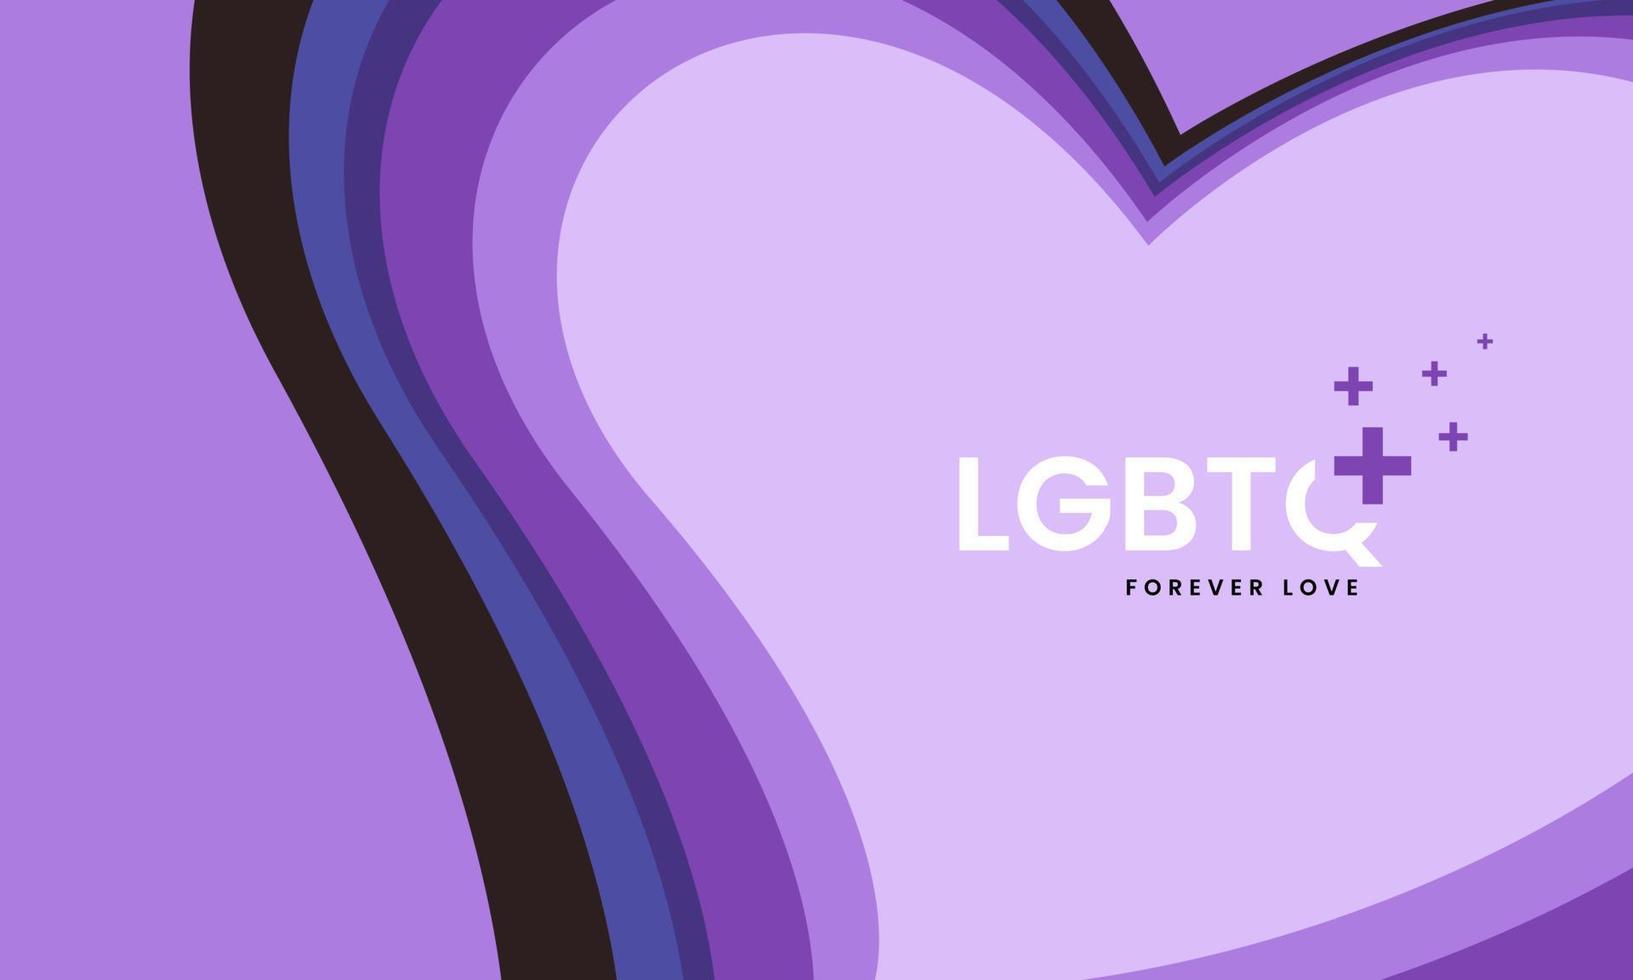 lgbtq plus diseño de fondo en forma de corazón de arco iris colorido para el mes del orgullo lgbtq sobre fondo morado claro con espacio de texto, vector y plantilla de ilustración